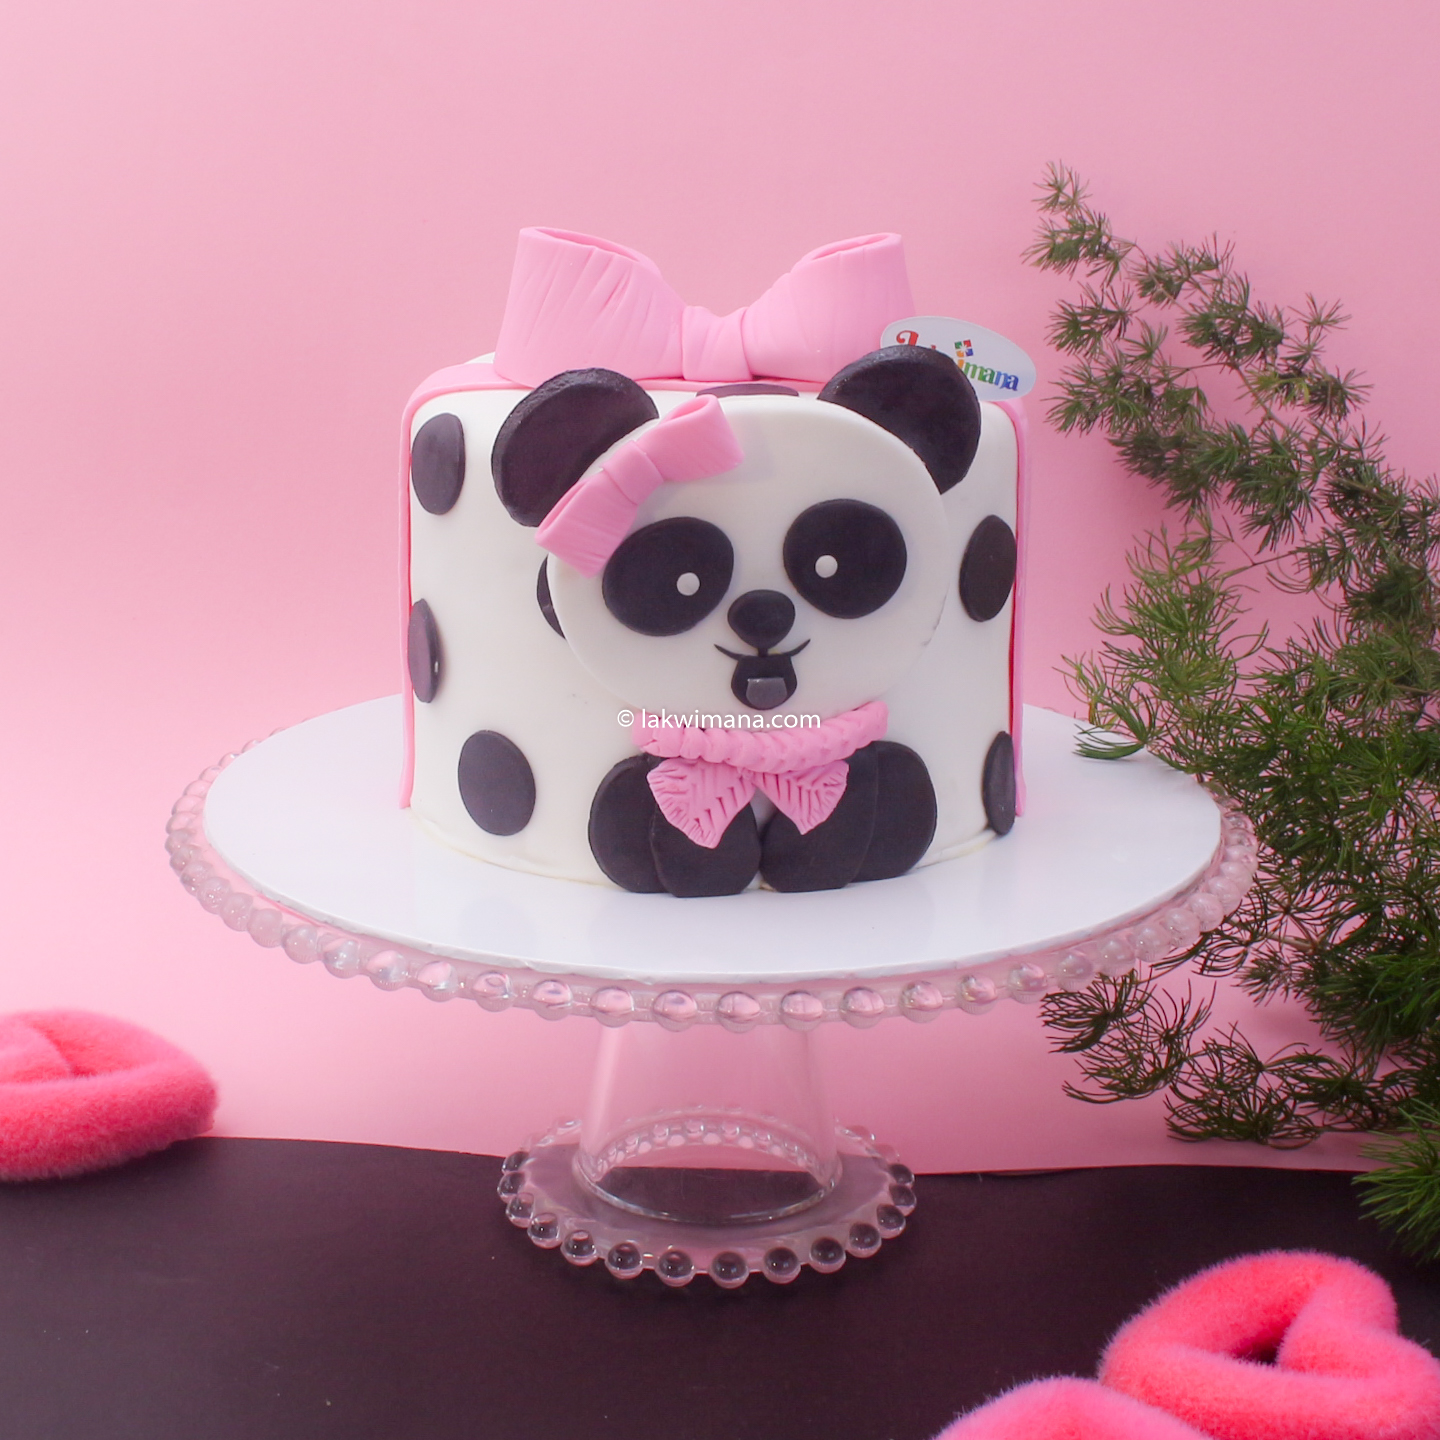 Panda Birthday Cake for Girl - 1.5kg